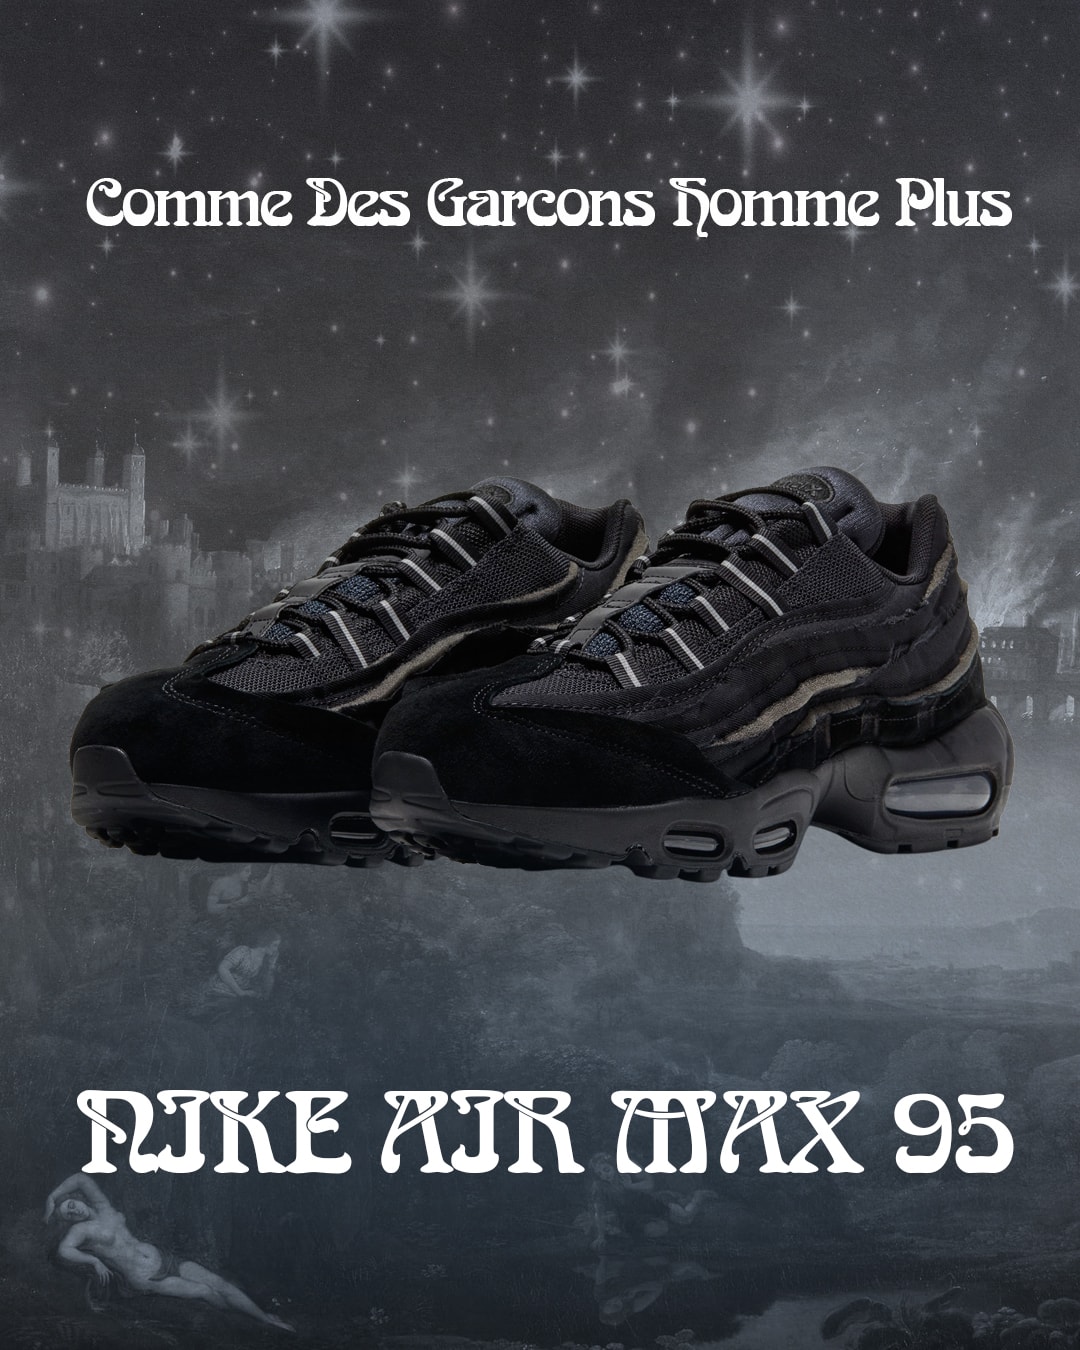 COMME des GARÇONS HOMME PLUS x Nike Air Max 95 聯乘鞋款台灣上架情報